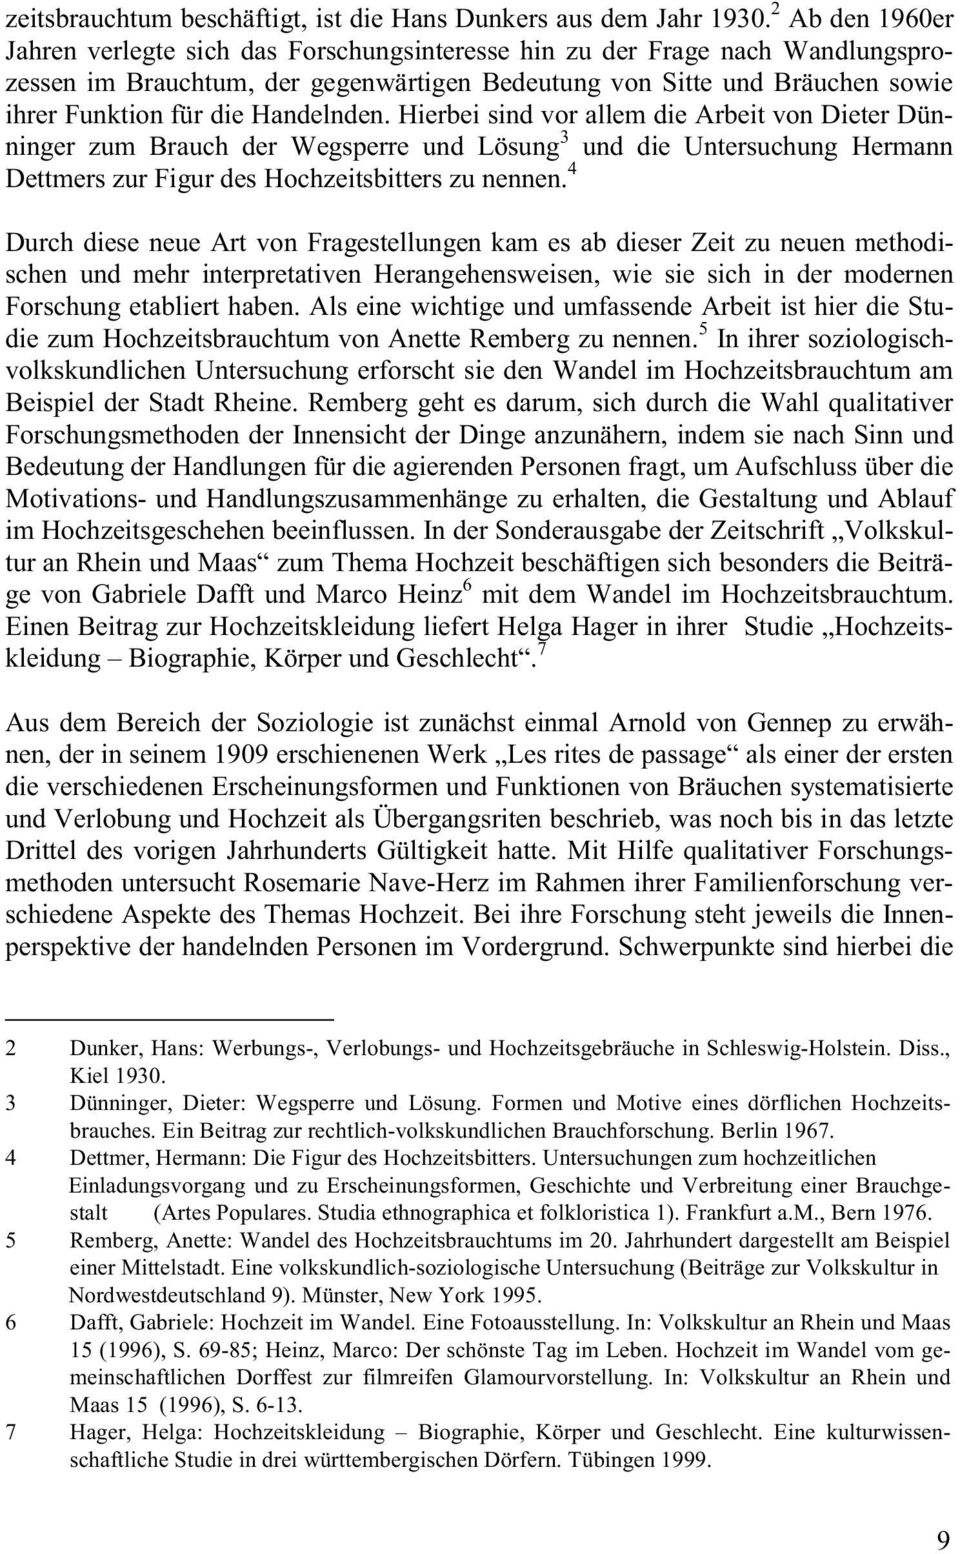 Handelnden. Hierbei sind vor allem die Arbeit von Dieter Dünninger zum Brauch der Wegsperre und Lösung 3 und die Untersuchung Hermann Dettmers zur Figur des Hochzeitsbitters zu nennen.